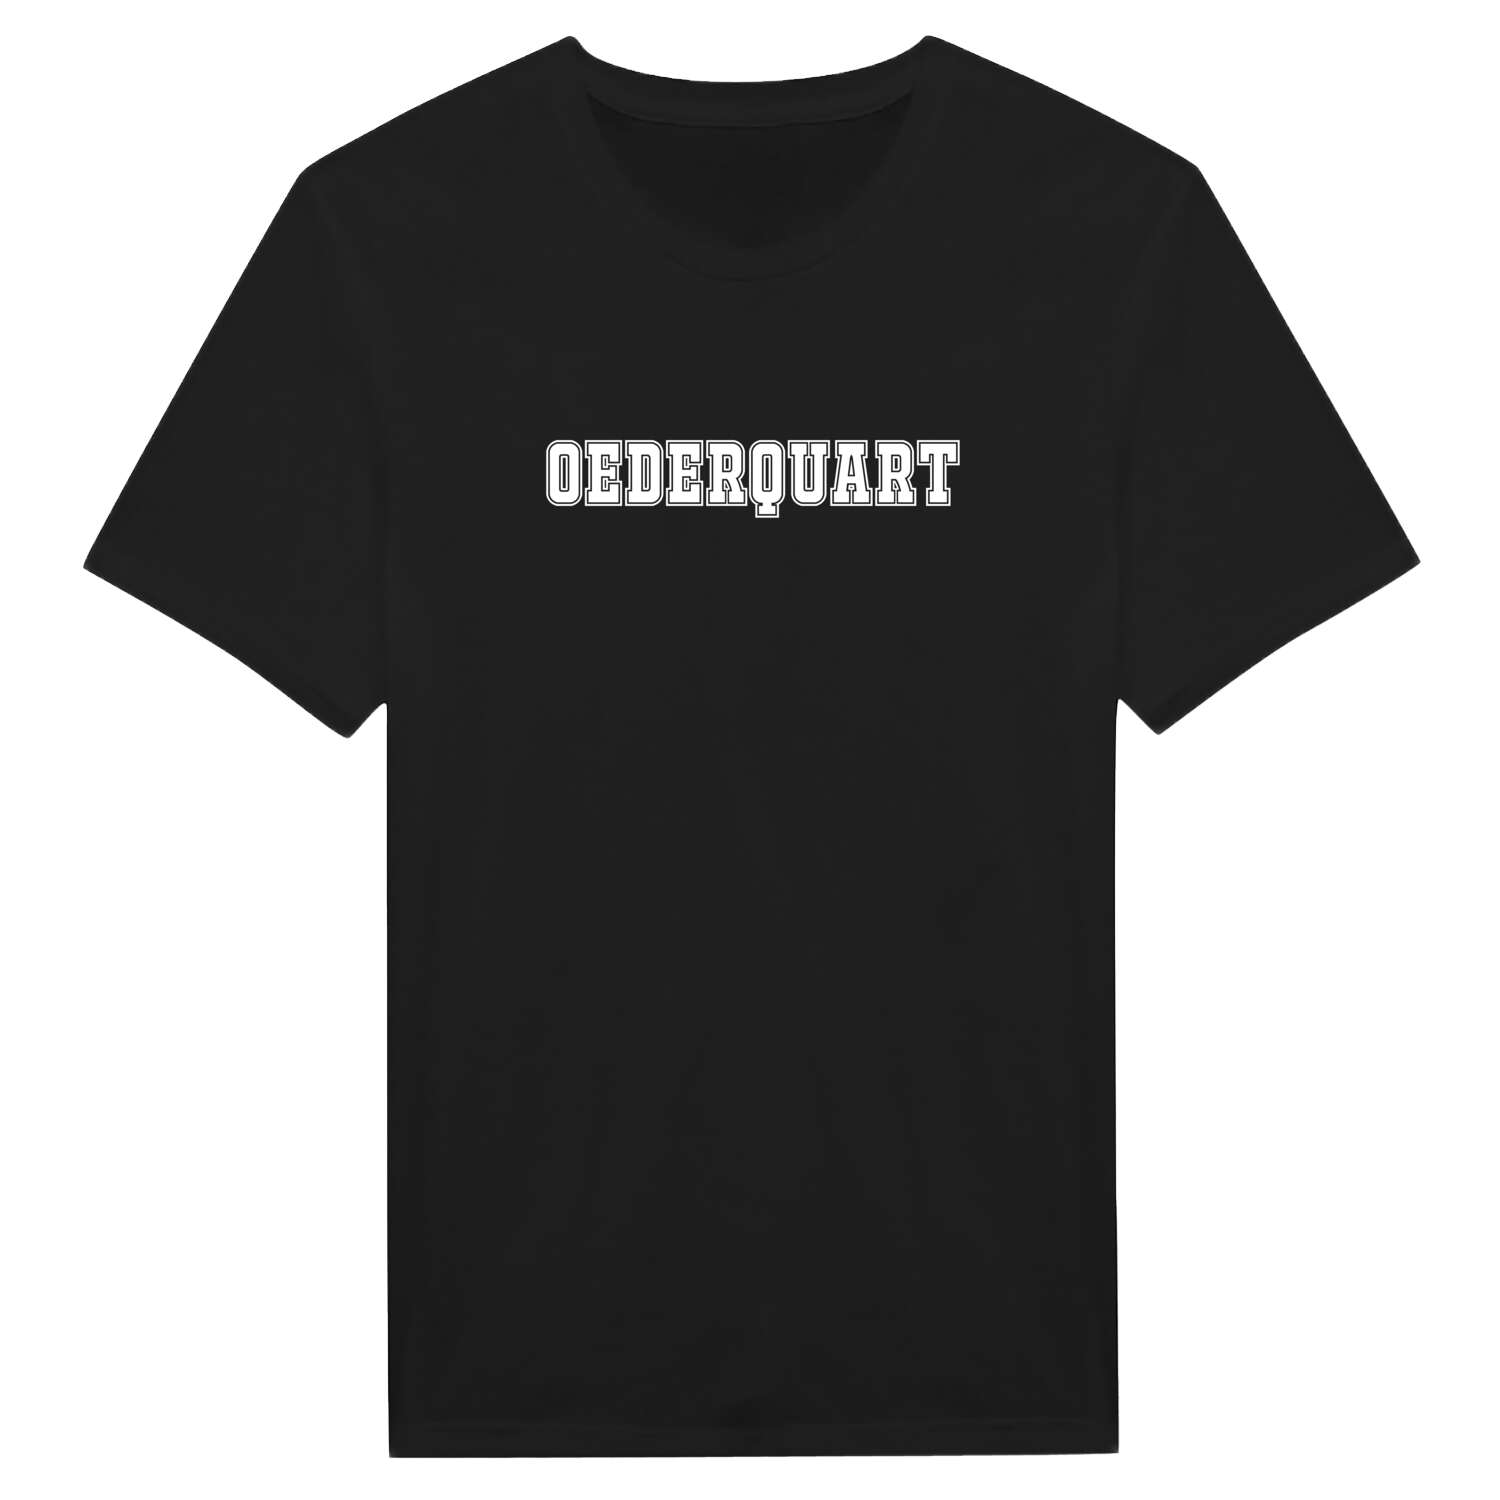 Oederquart T-Shirt »Classic«